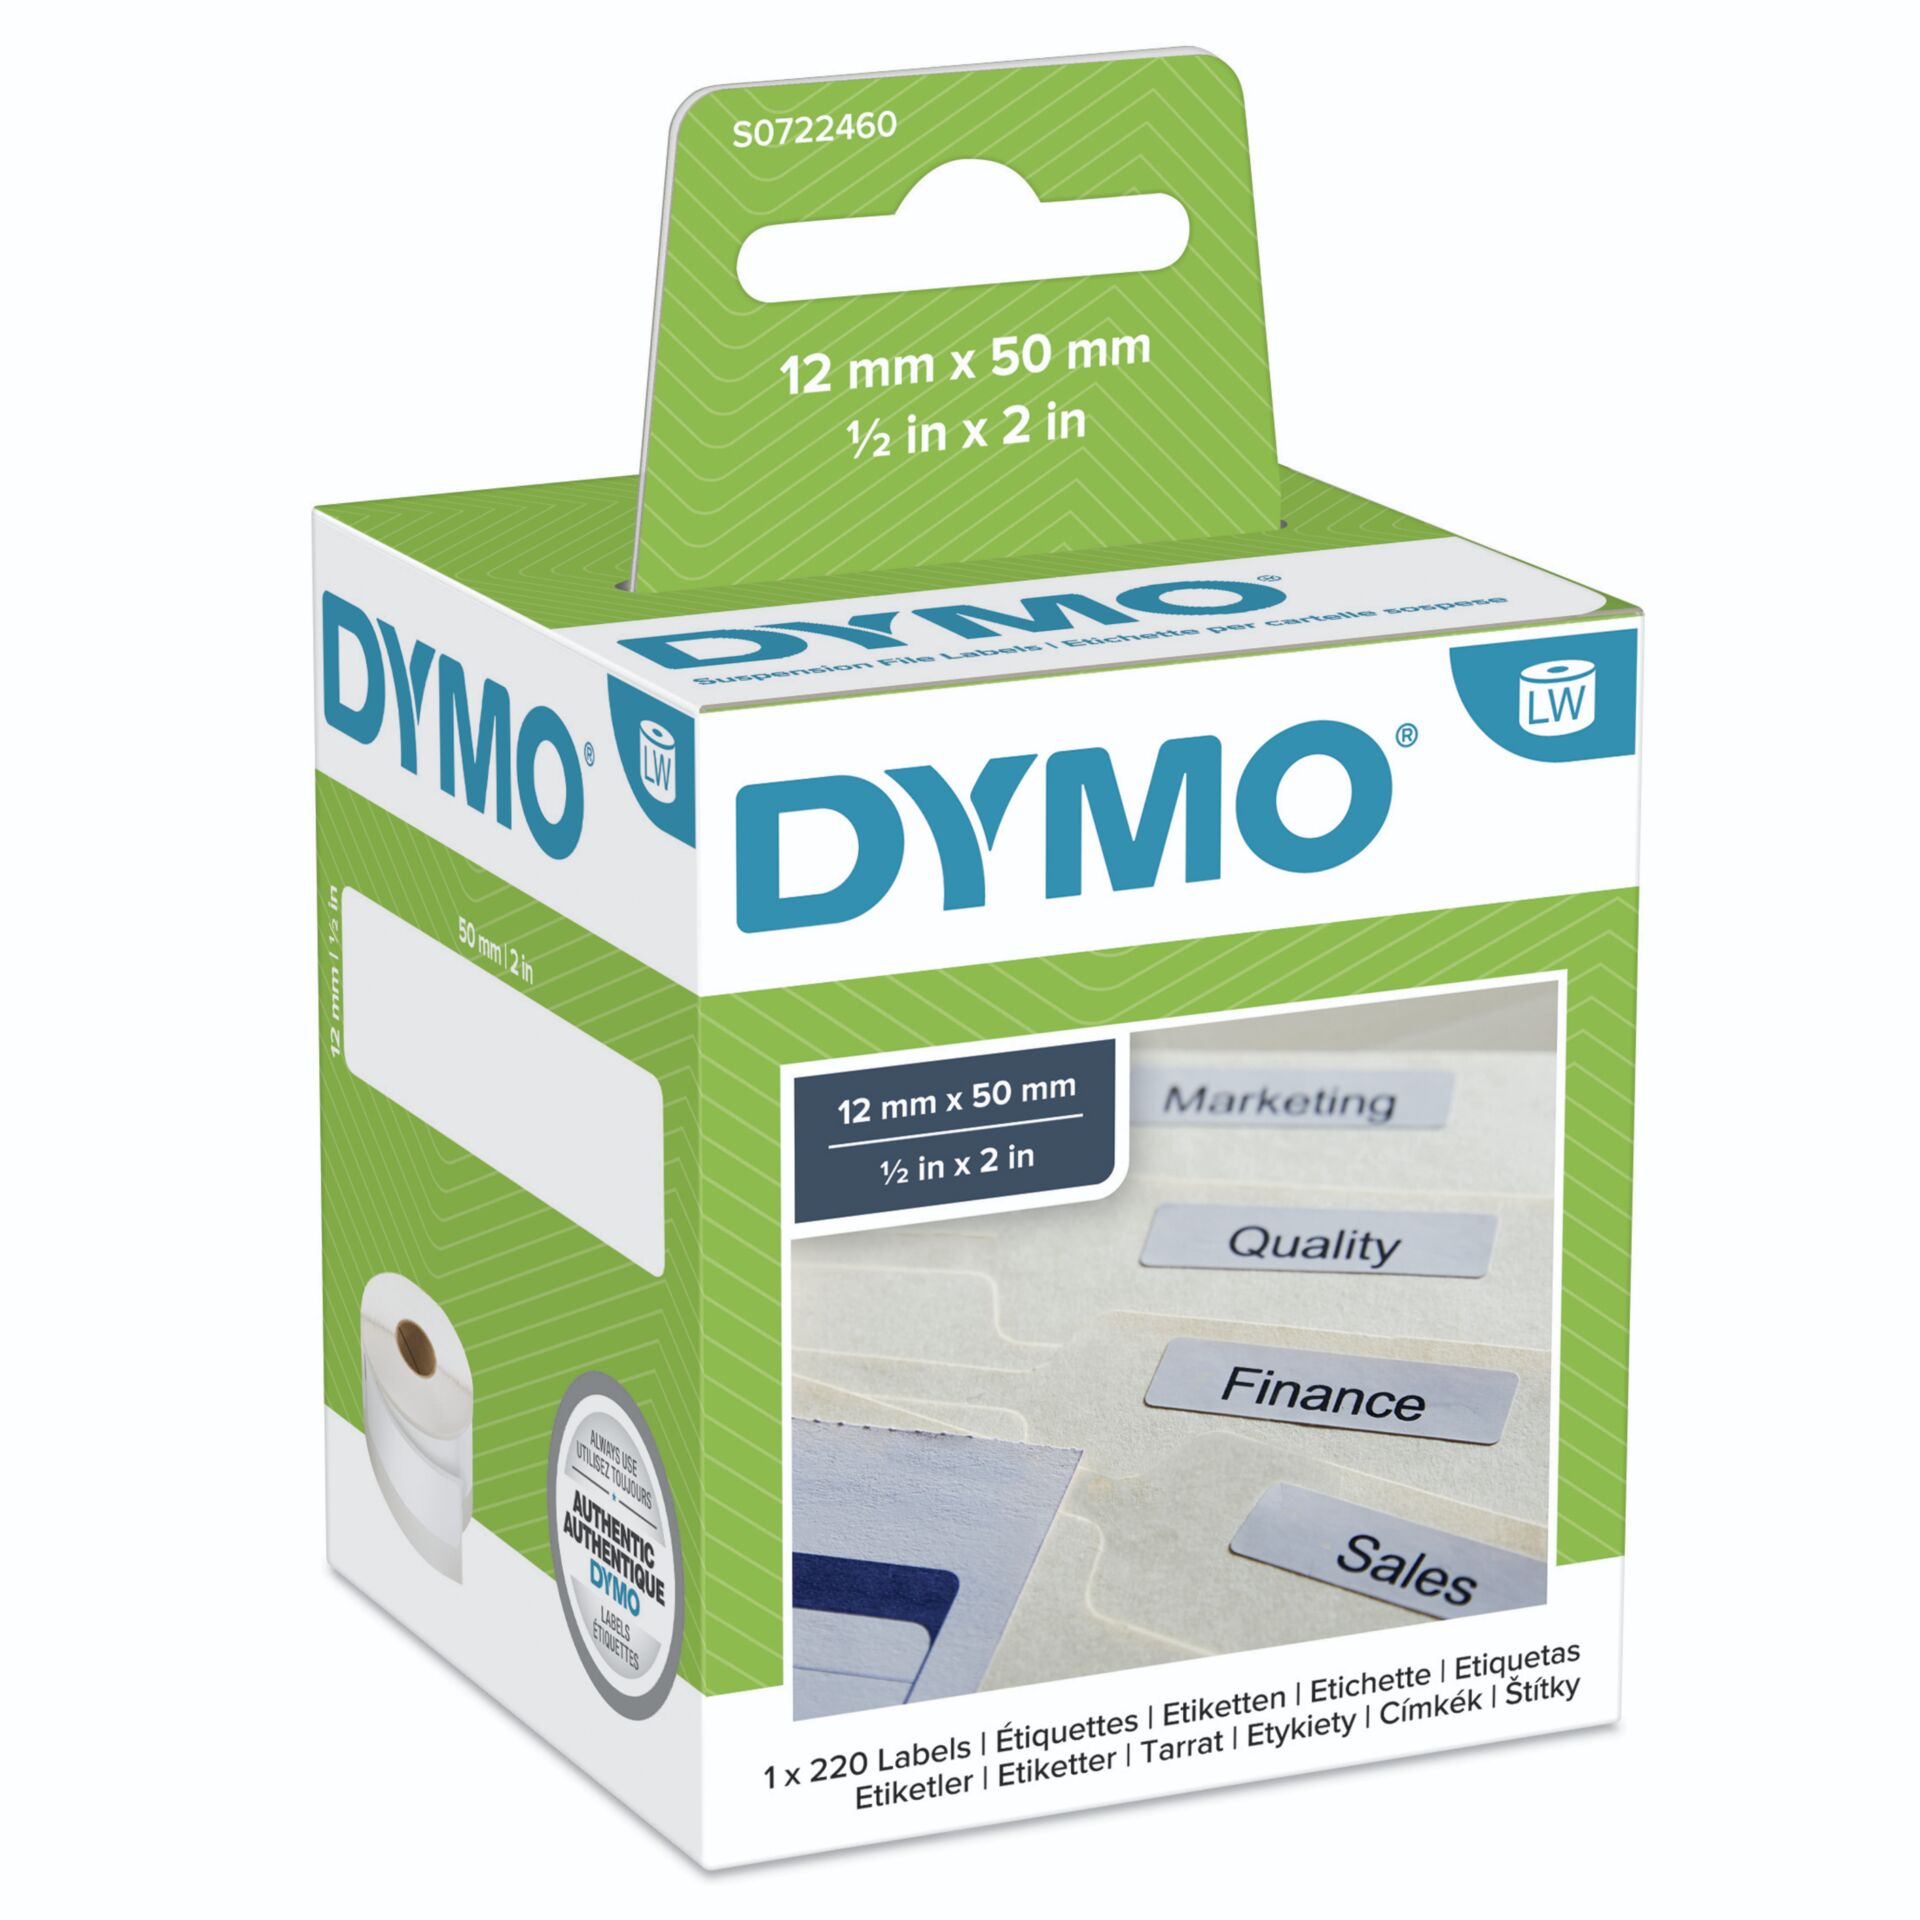 Dymo Etiketten für Hängeablagen 99017 